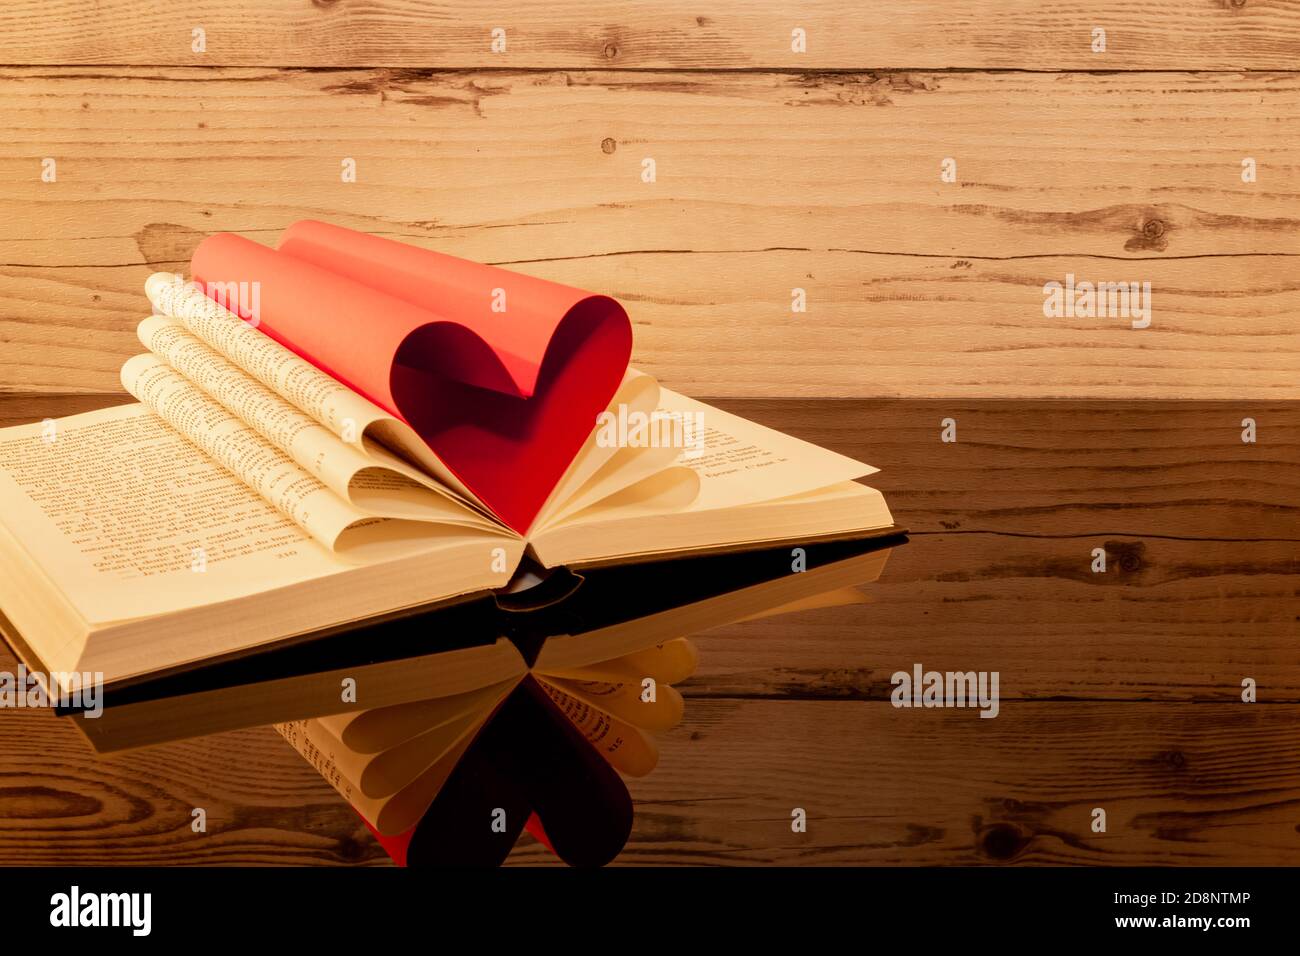 Libro ripiegato a forma di cuore su sfondo ligneo con riflessi. Foto Stock